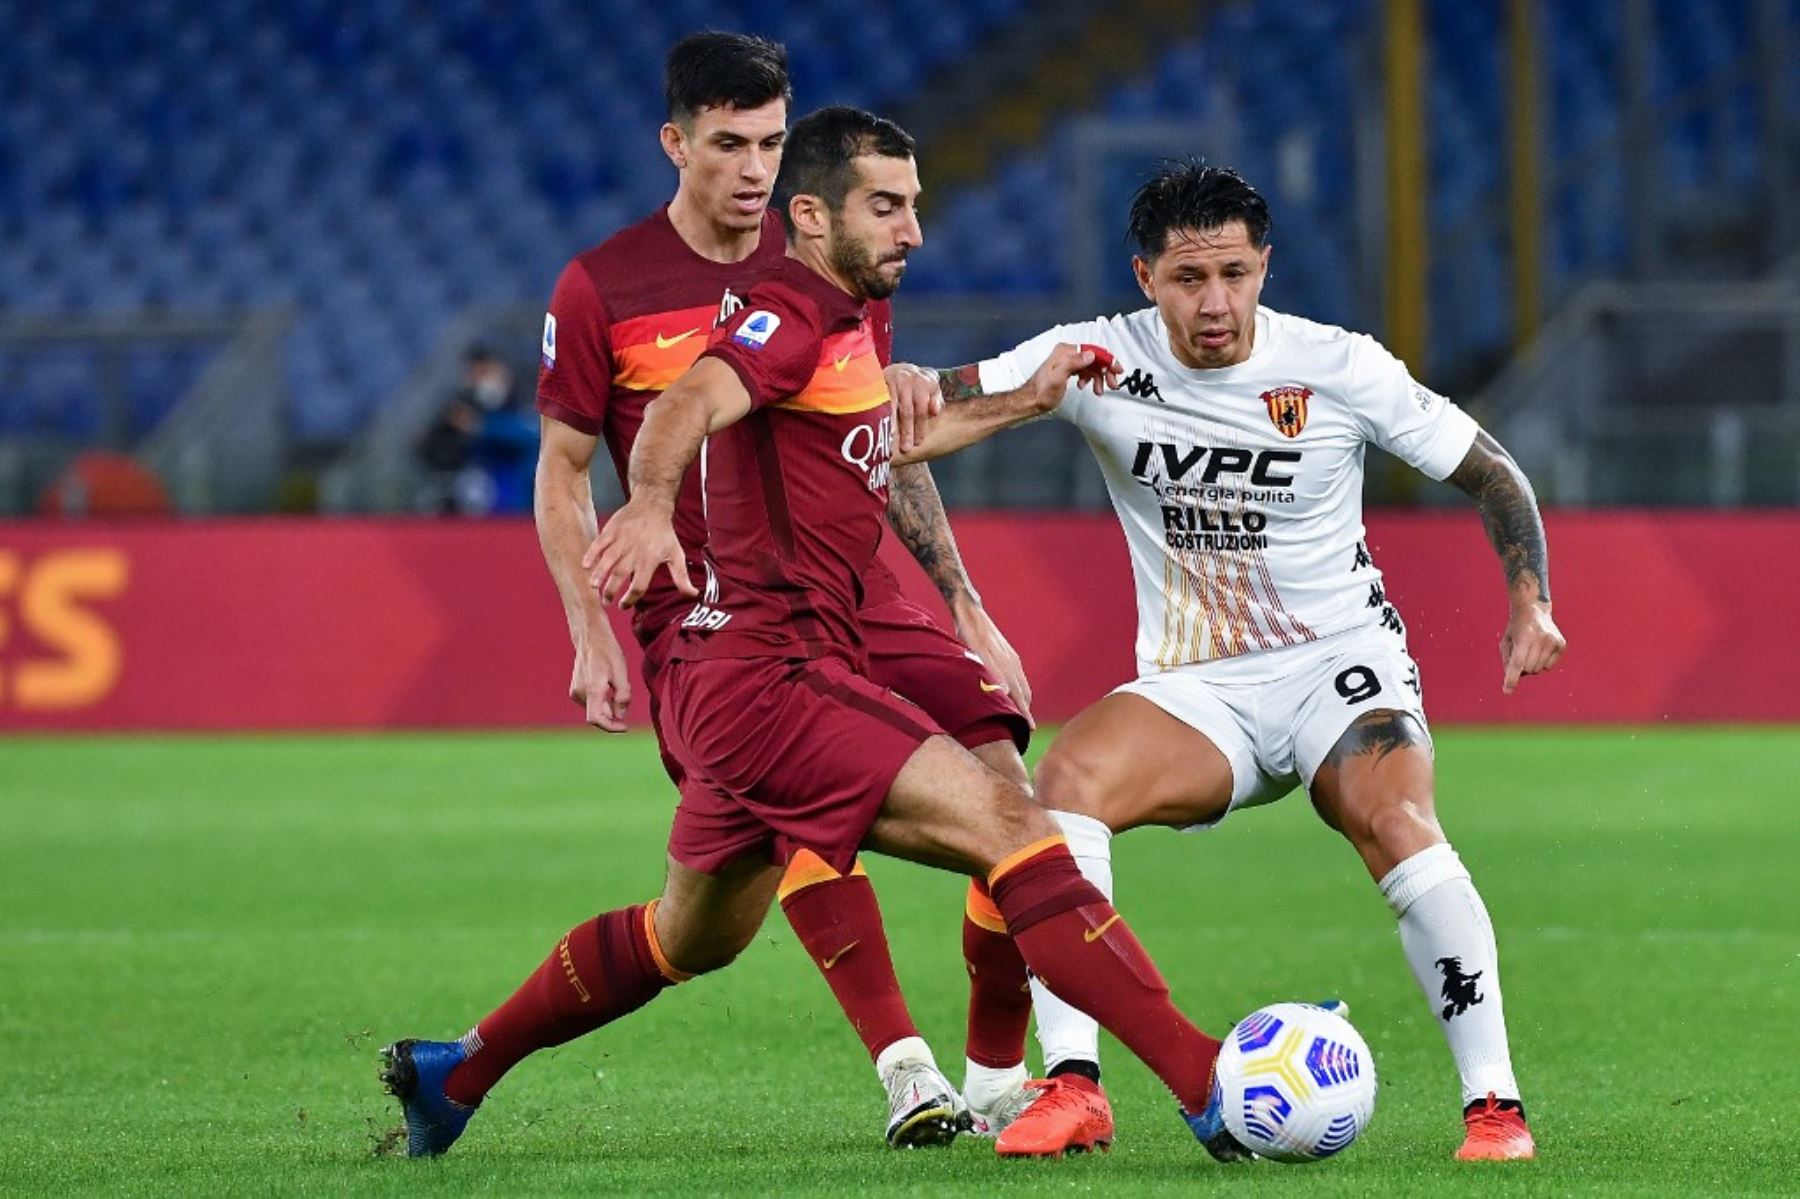 El delantero de Benevento, Gianluca Lapadula , lucha por el balón con el mediocampista armenio del AS Roma Henrikh Mkhitaryan  durante el partido de fútbol de la Serie A italiana Roma vs Benevento.Foto:AFP